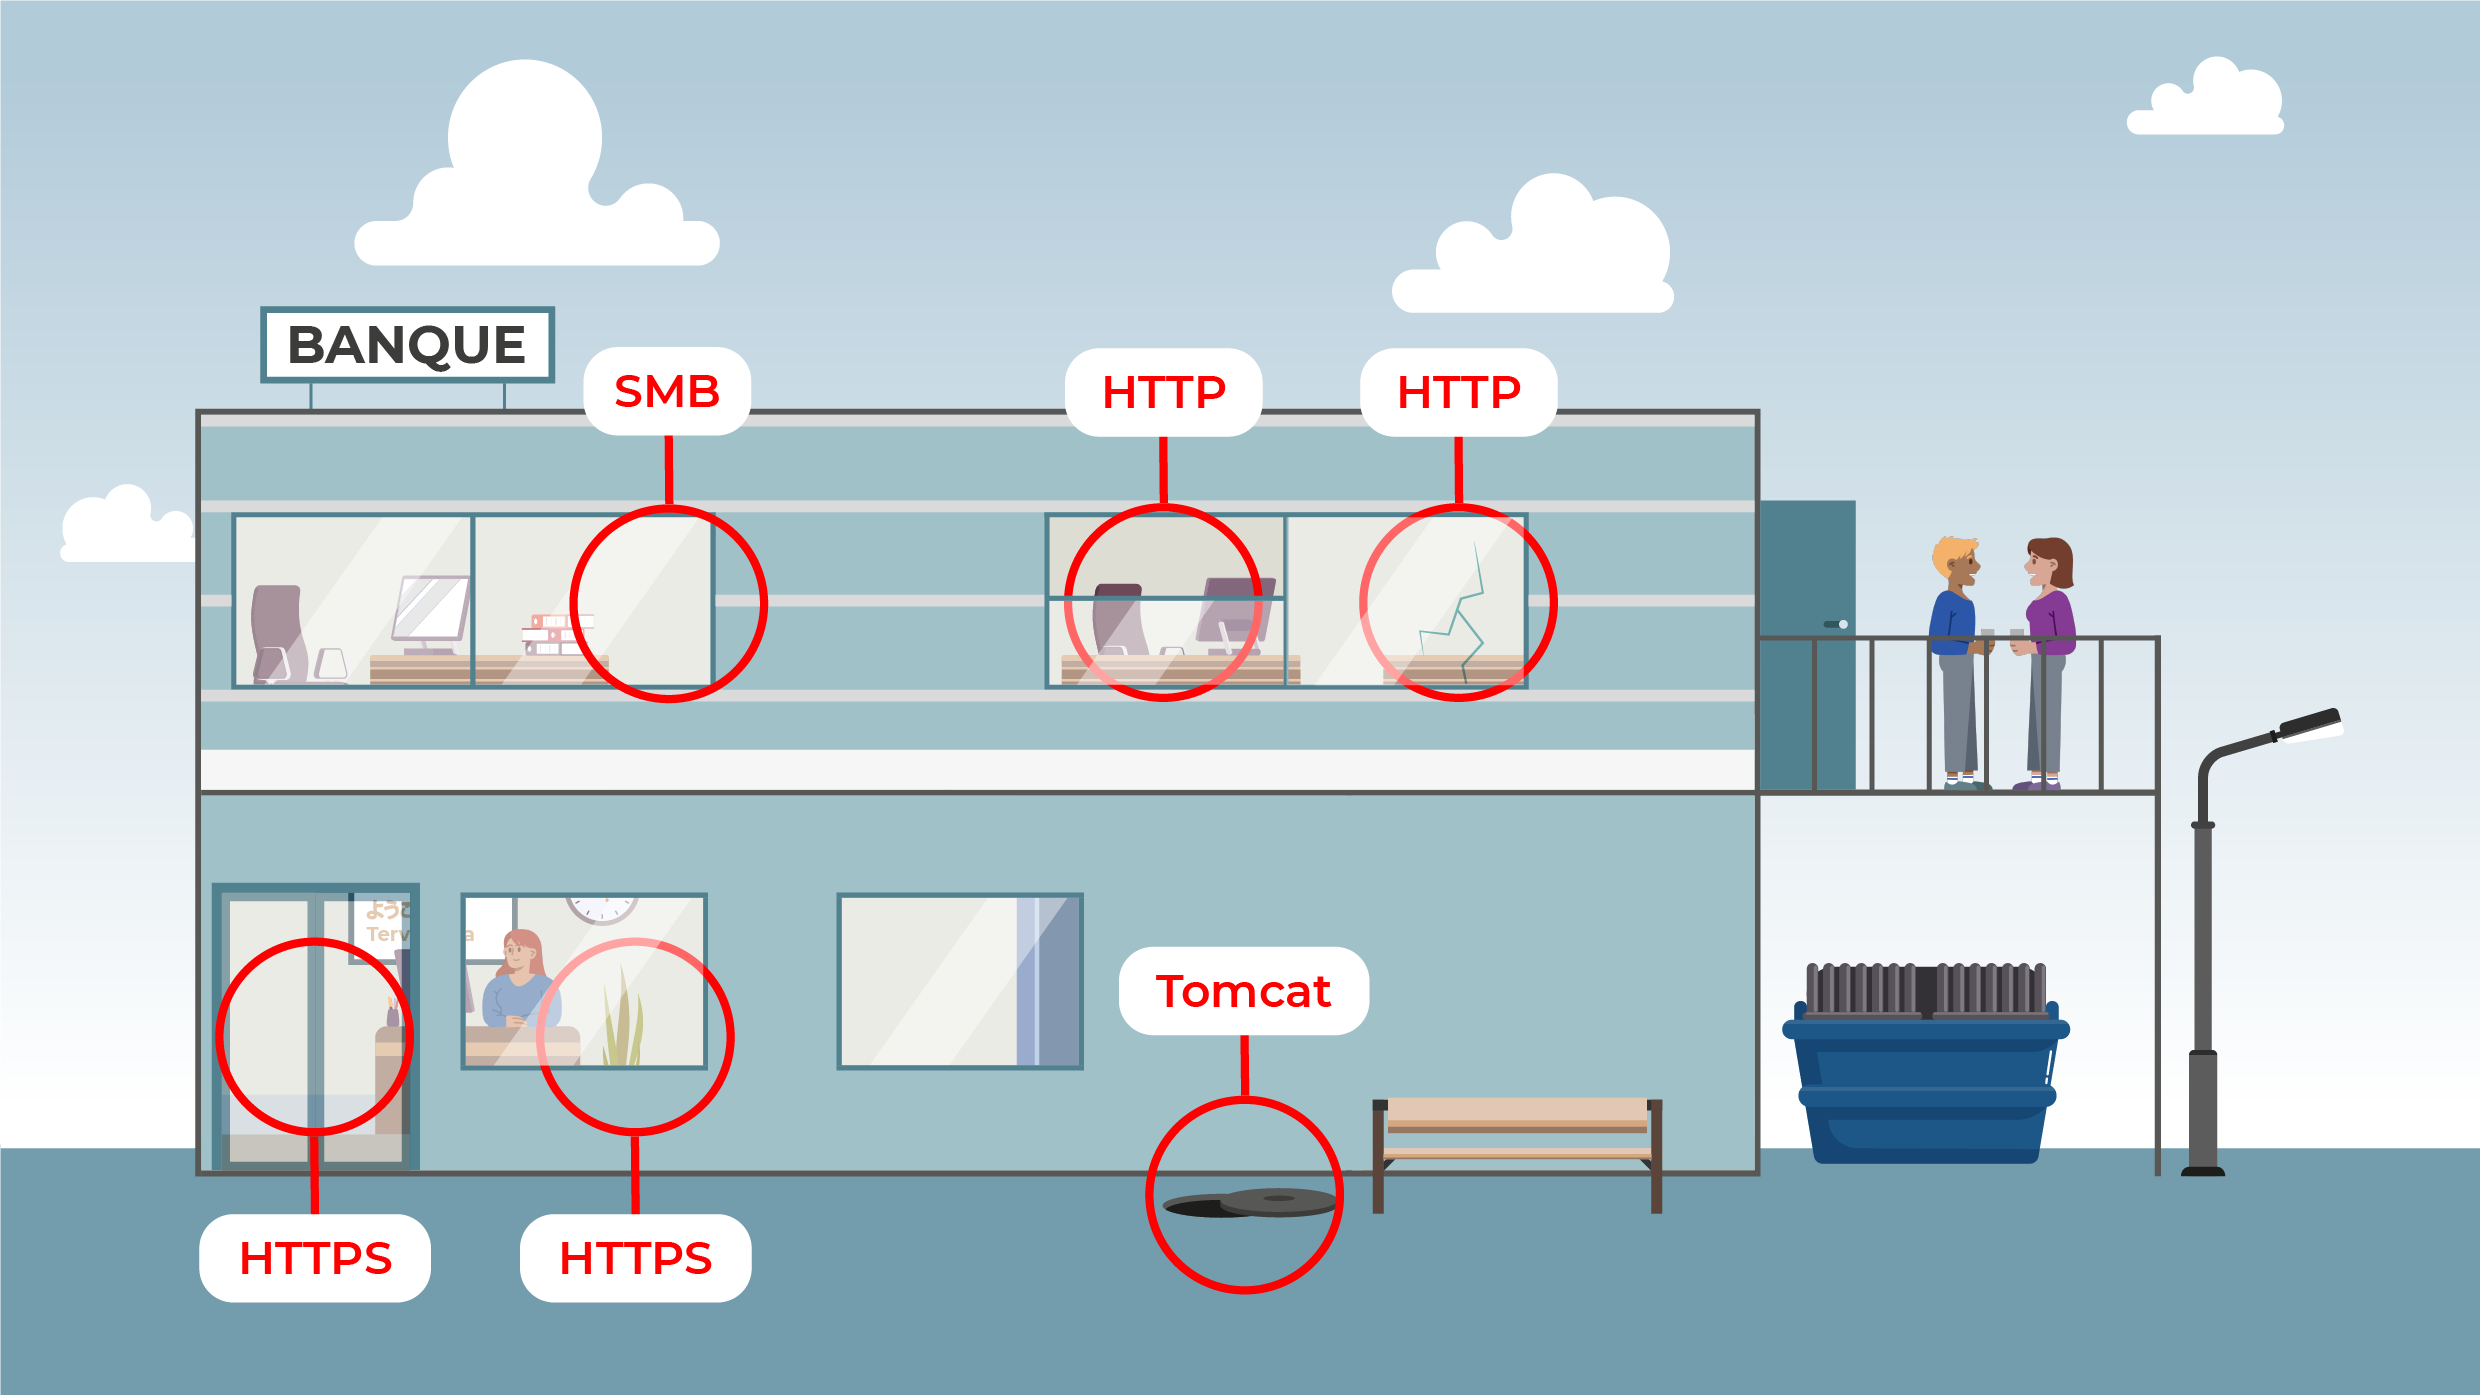 L'image met en comparaison différents points d'entrée de la banque (porte principale, fenêtres, canalisations) avec différents points d'entrée sur une application (SMB, HTTPS, Tomcat).